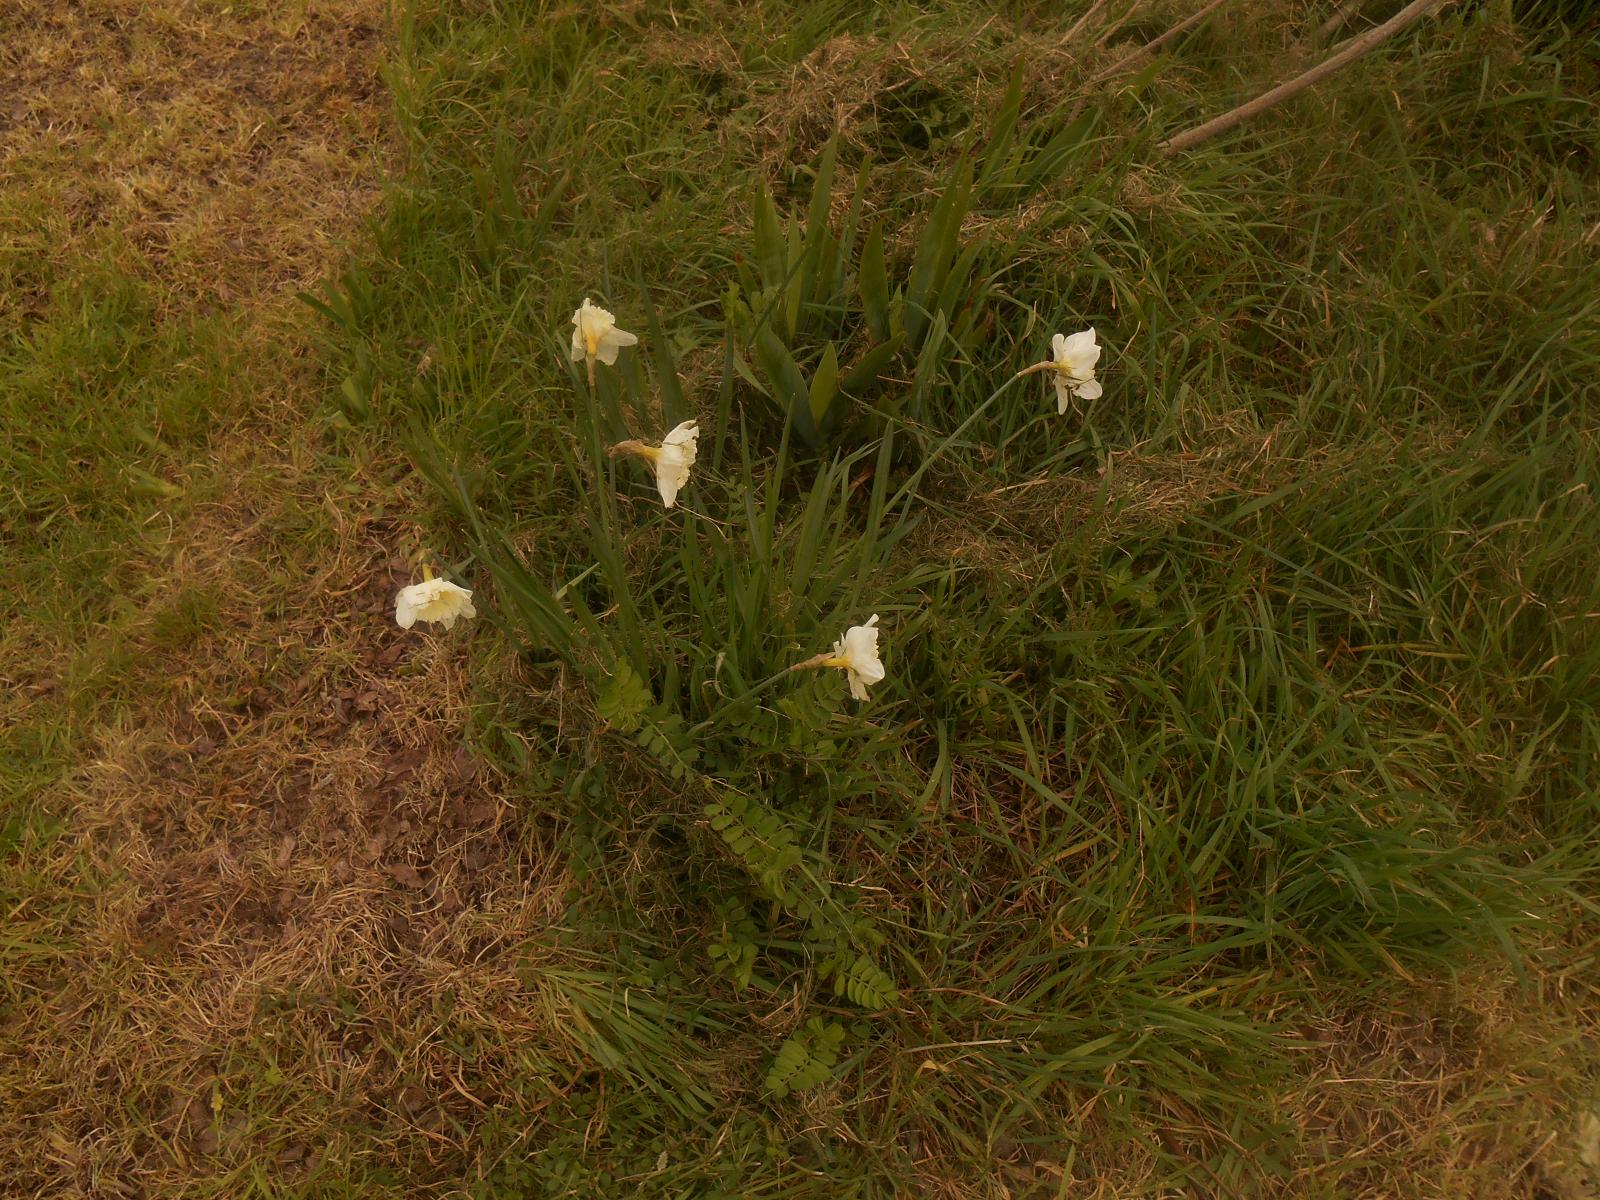 Jolies fleurs blanches ( Les Moutiers en Retz )